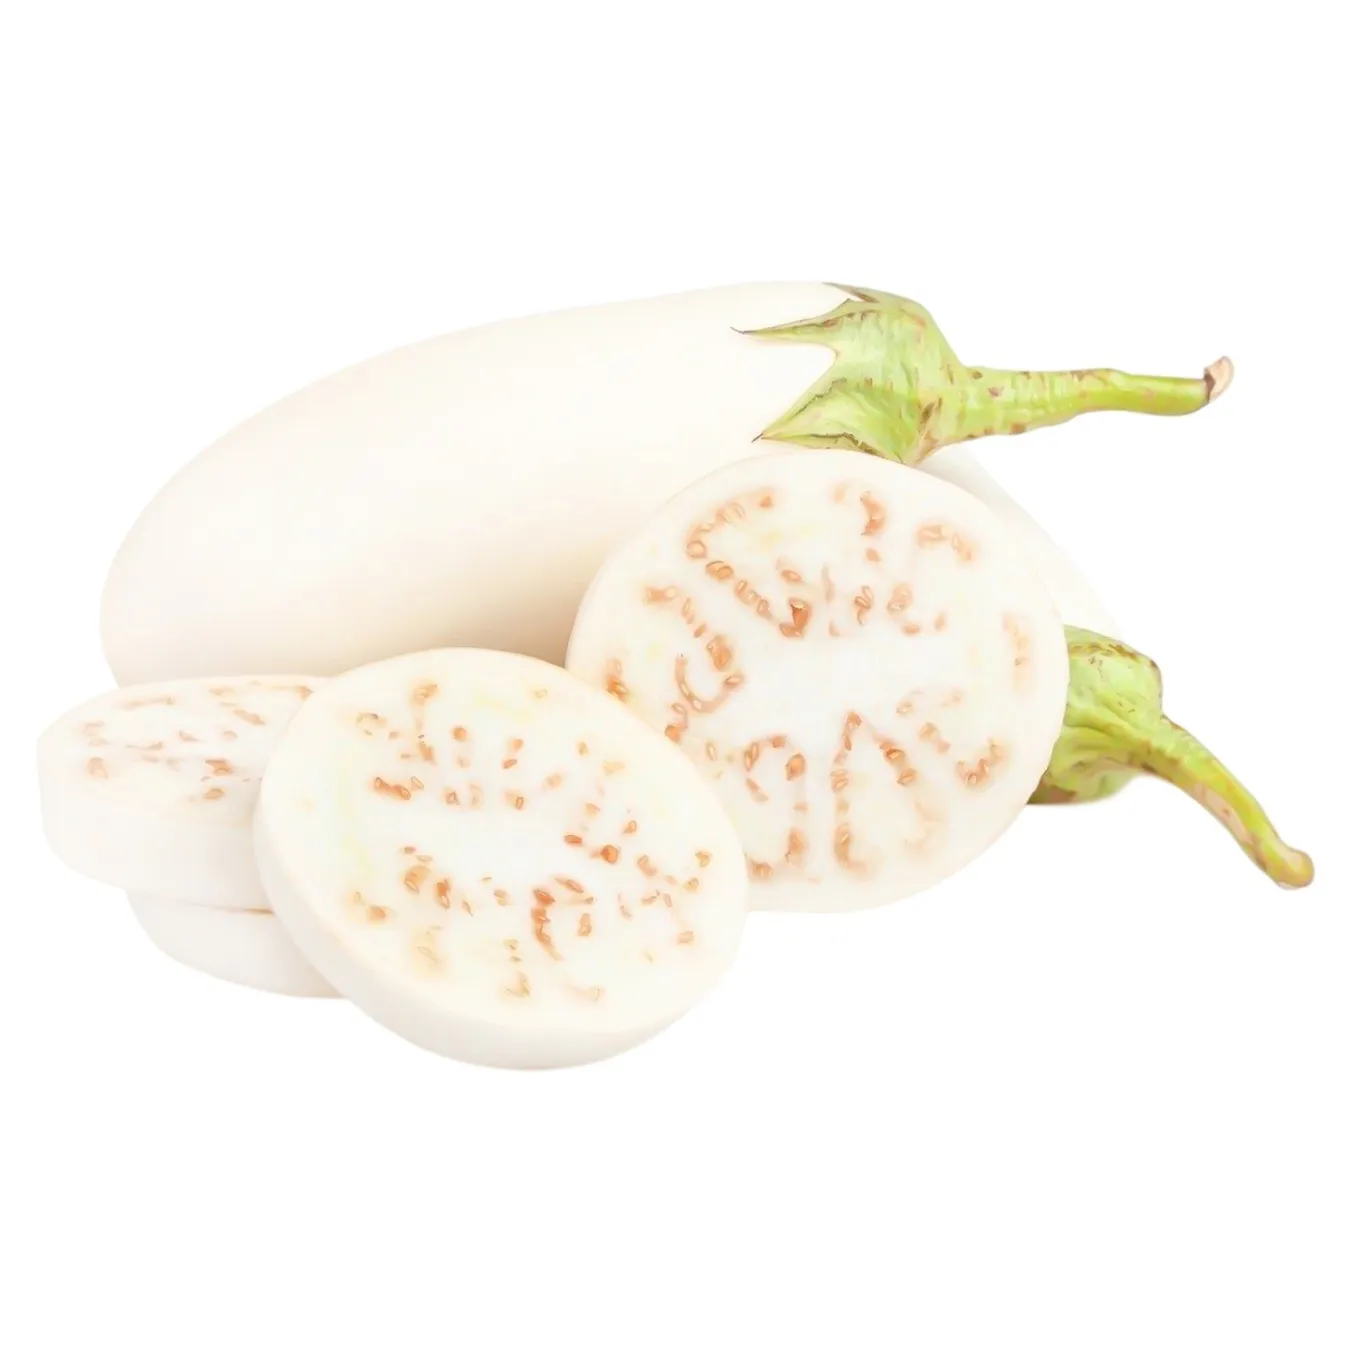 White eggplant